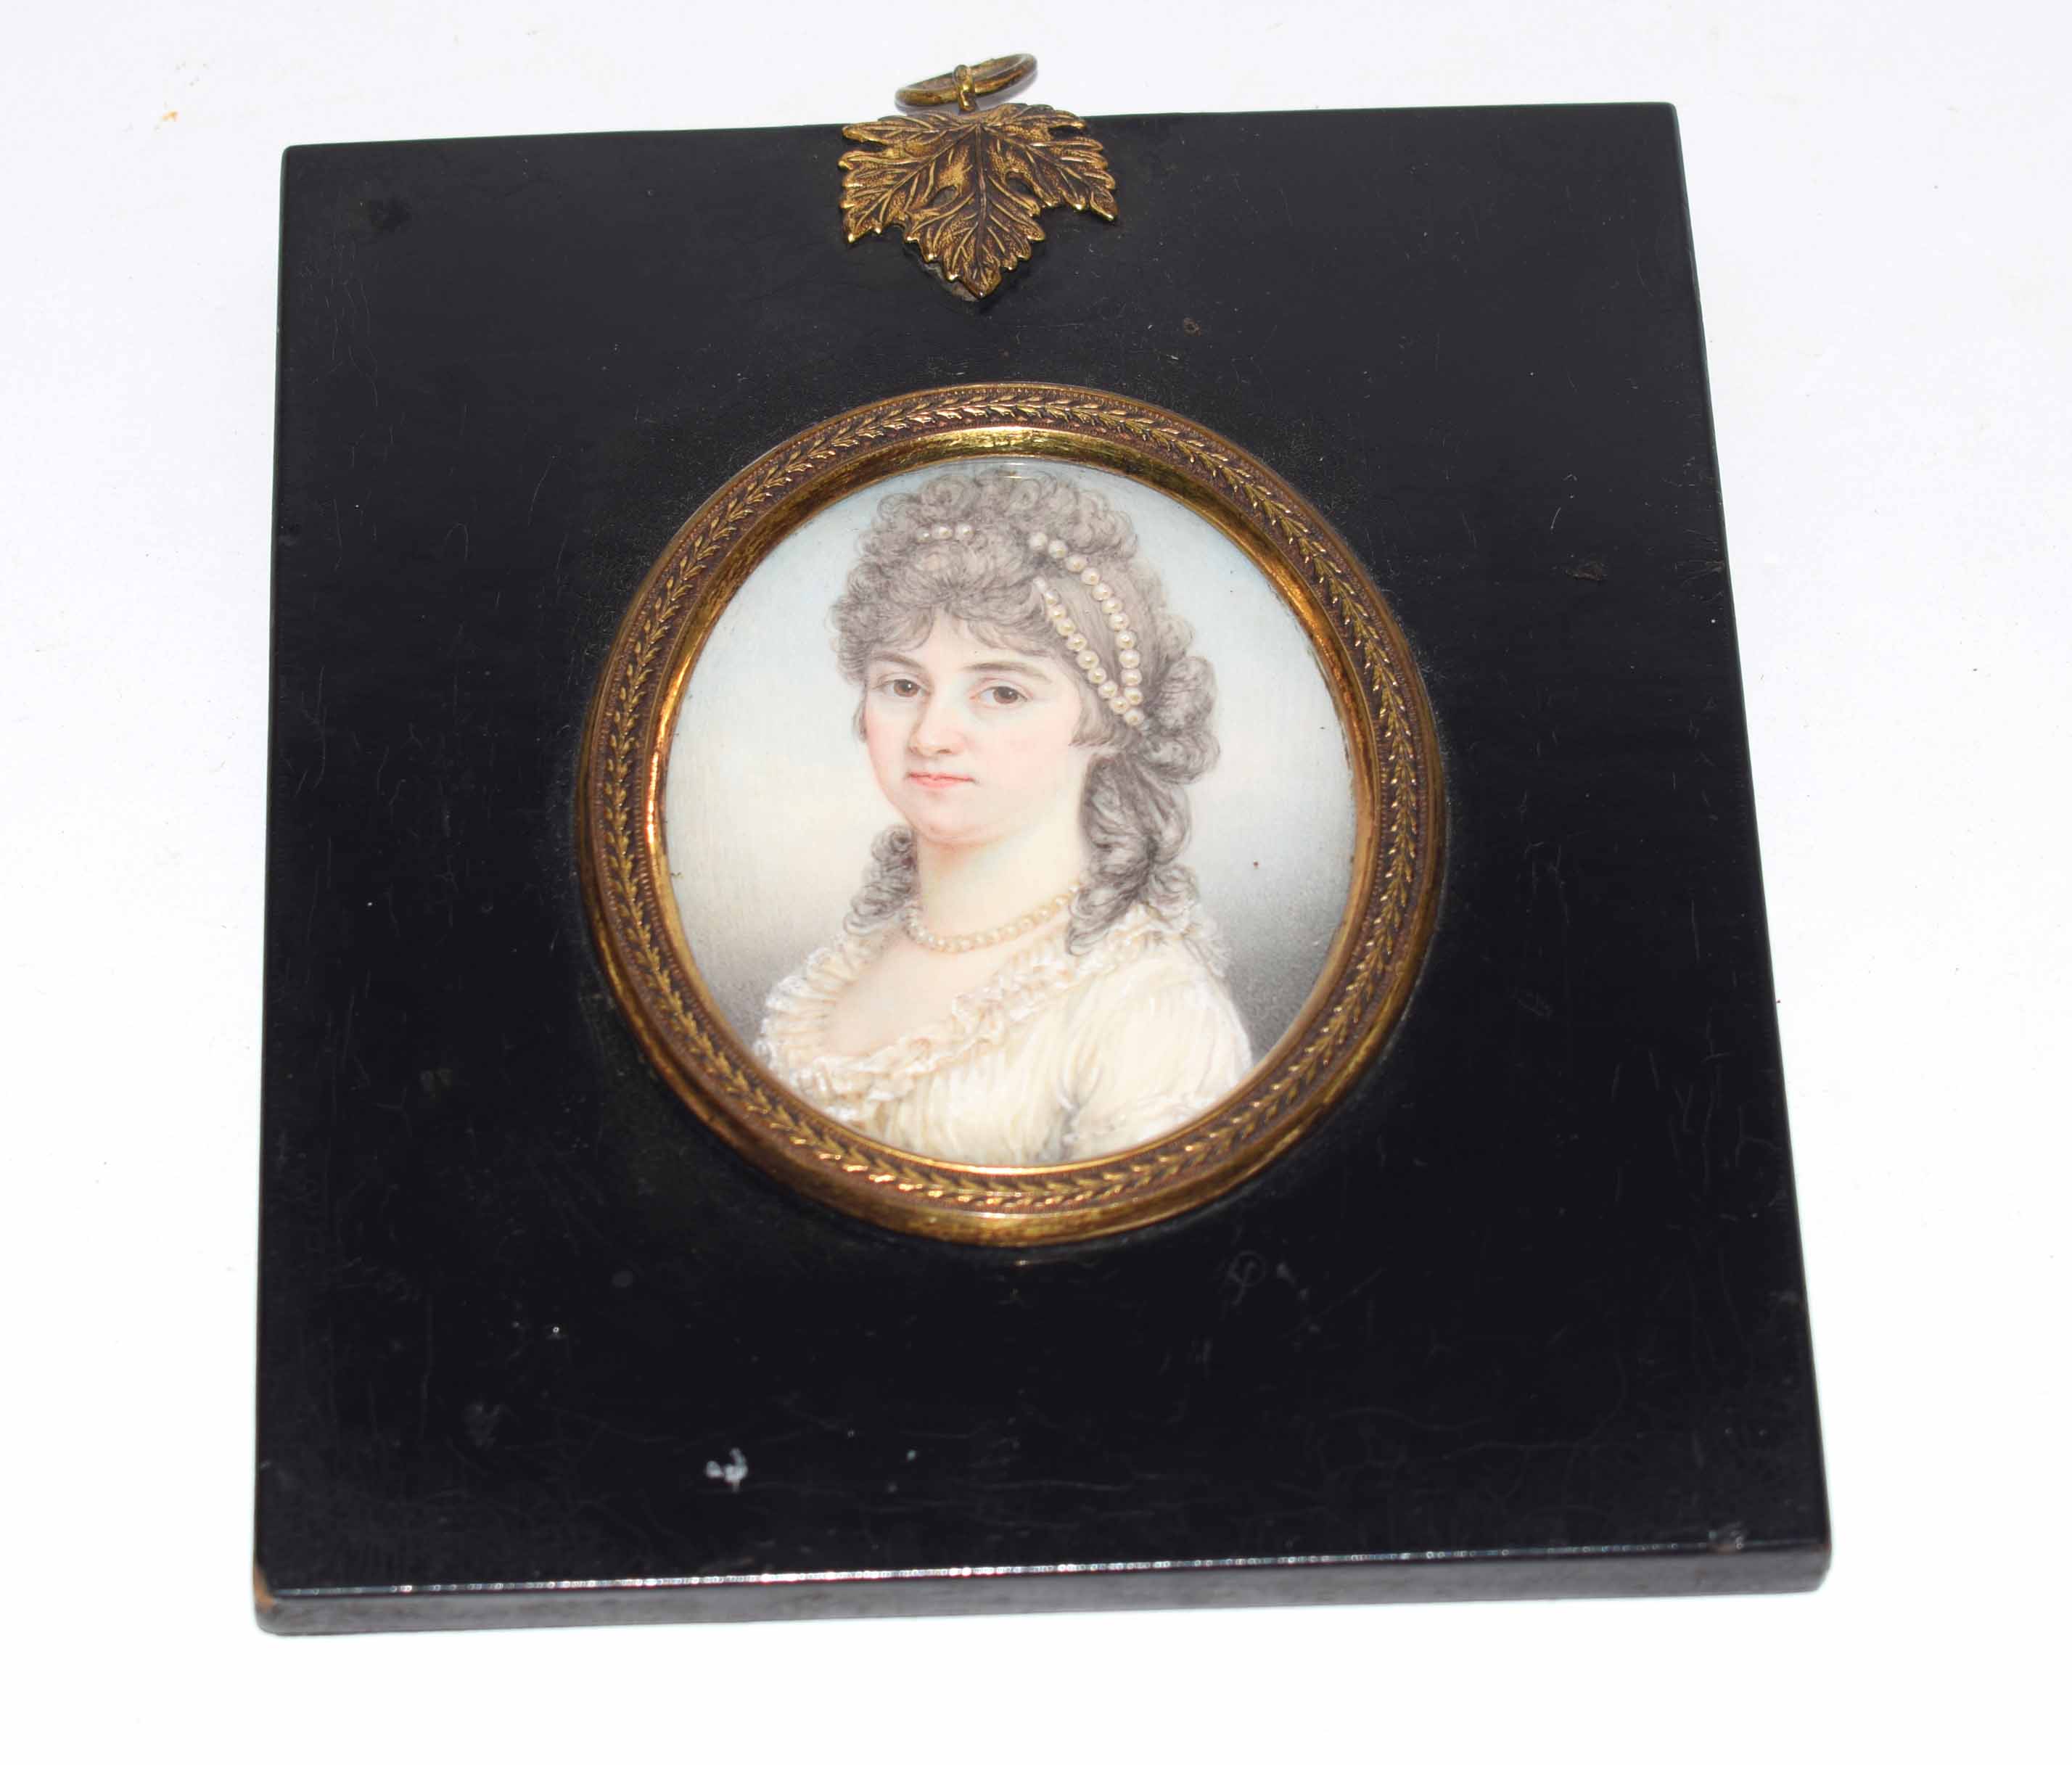 20th century portrait miniature, Head and shoulders portrait of a lady, 8 x 6cm